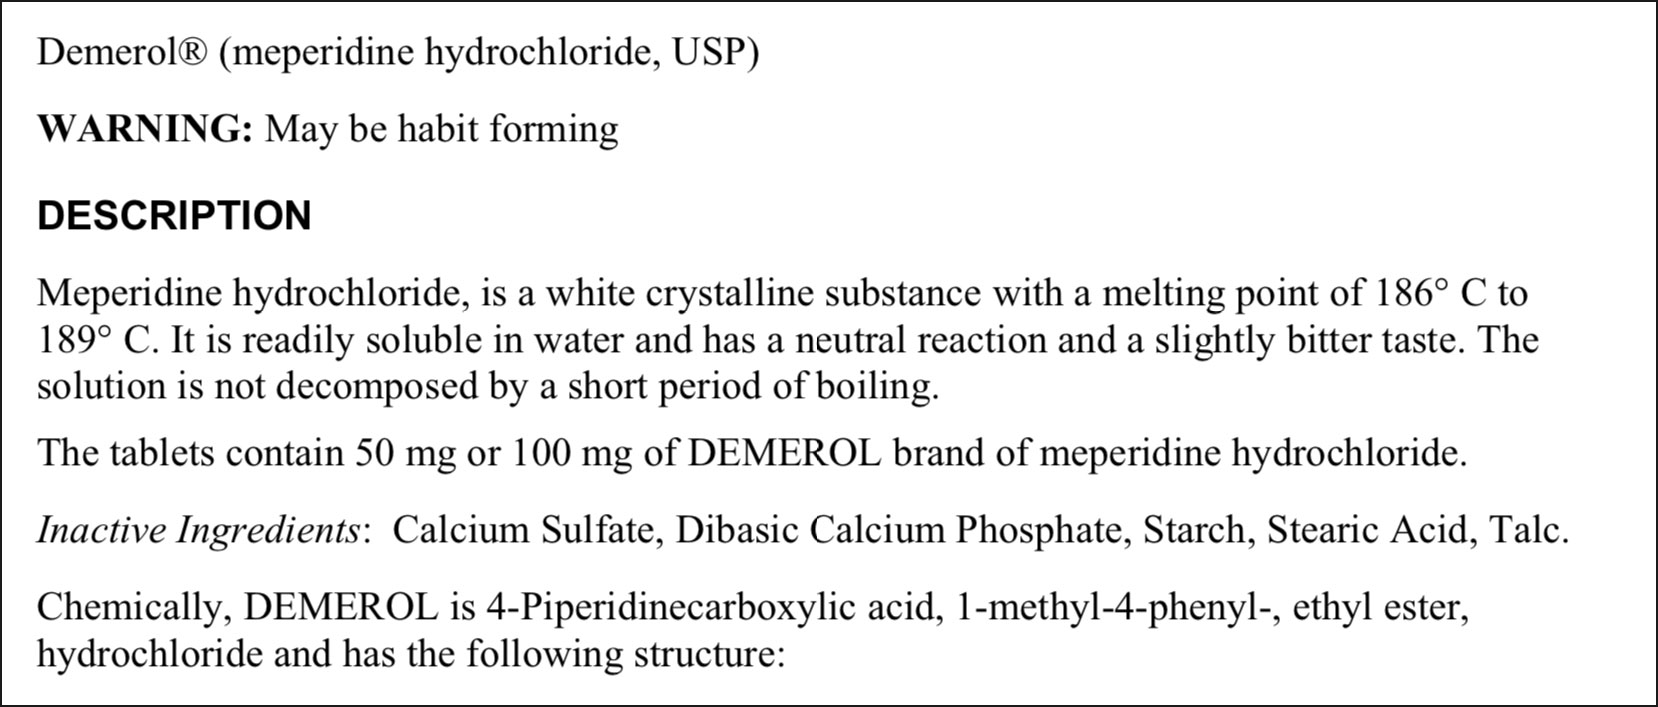 demerol meperidine hydrocholride